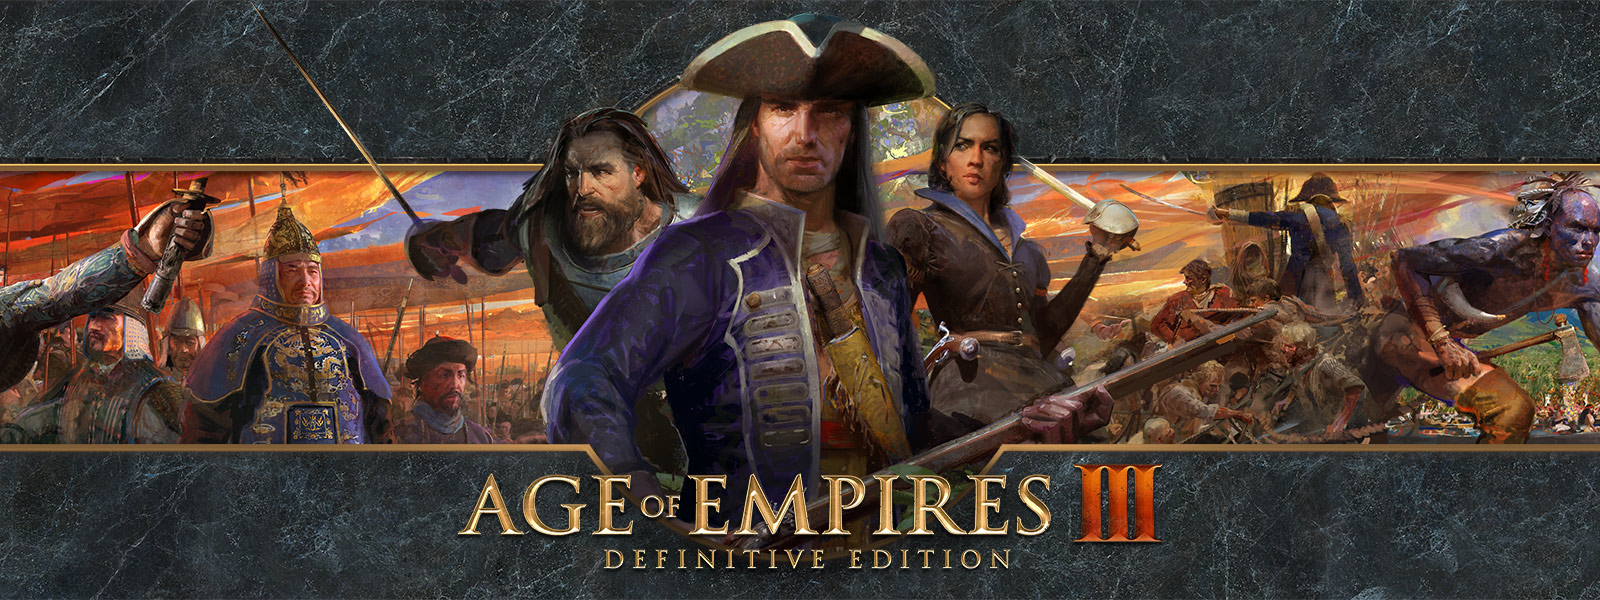 Az Age of Empires III: Definitive Edition emblémája háborús vezéreket és seregeiket tartalmazó háttérrel